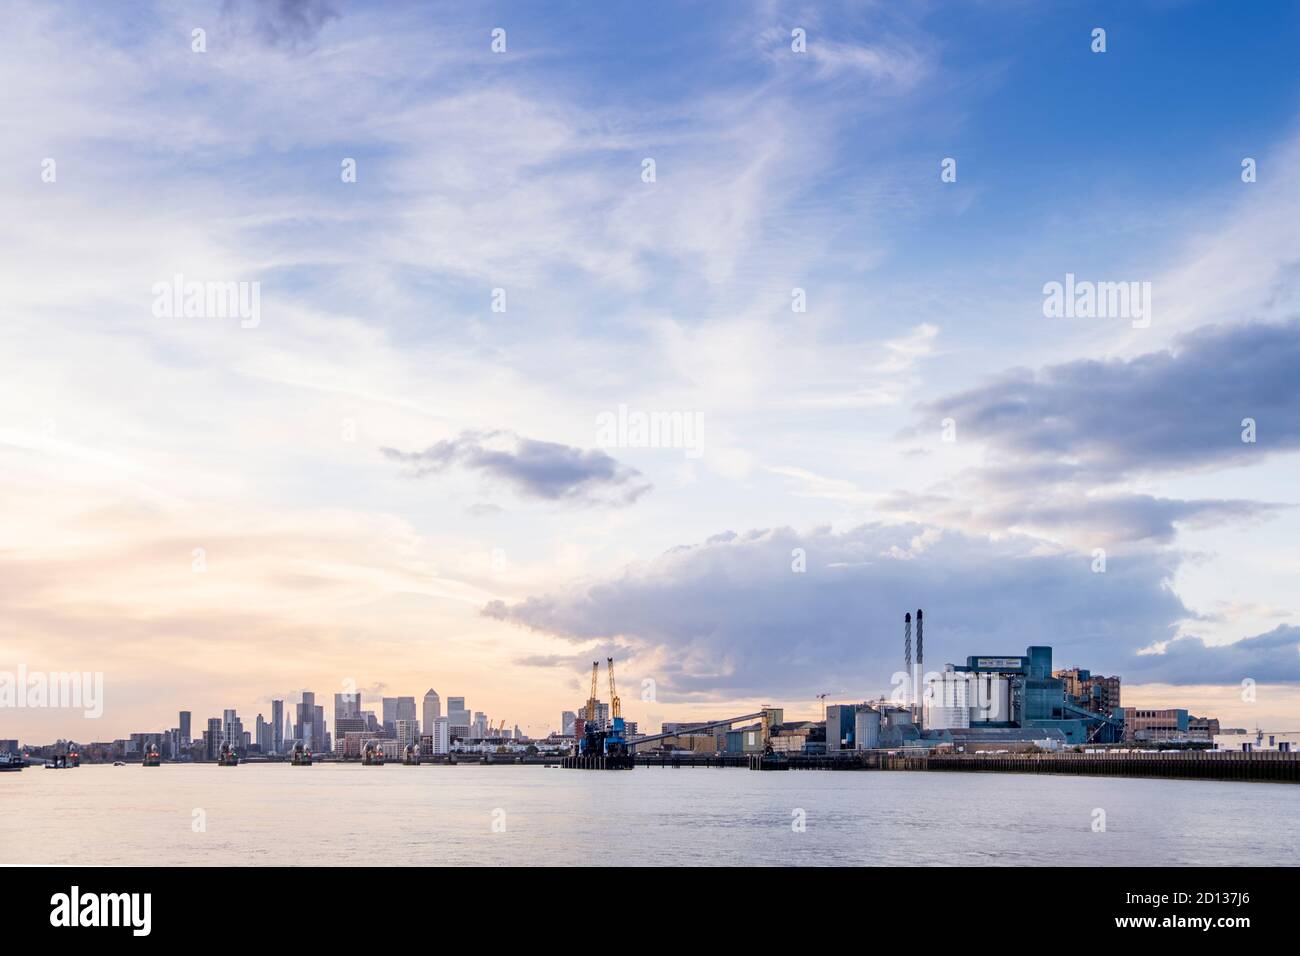 London, East London, Woolwich. Tate & Lyle ASR Zuckerraffinerie, Themse River, Skyline von London mit den Wolkenkratzern des Geschäftsviertels Canary Wharf Stockfoto